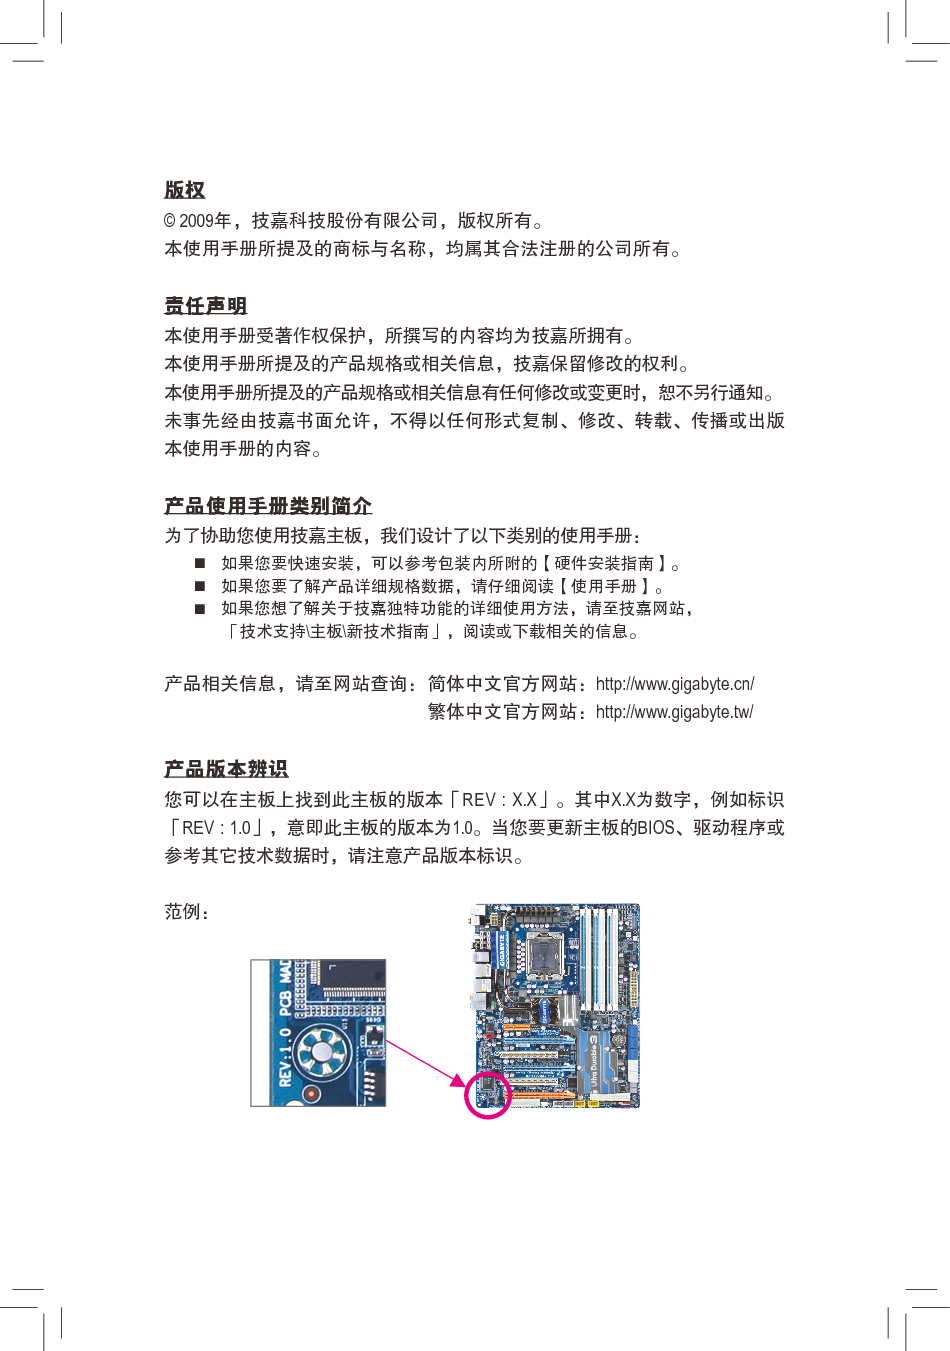 技嘉 Gigabyte GA-X58A-UD7 1002版 使用手册 第2页